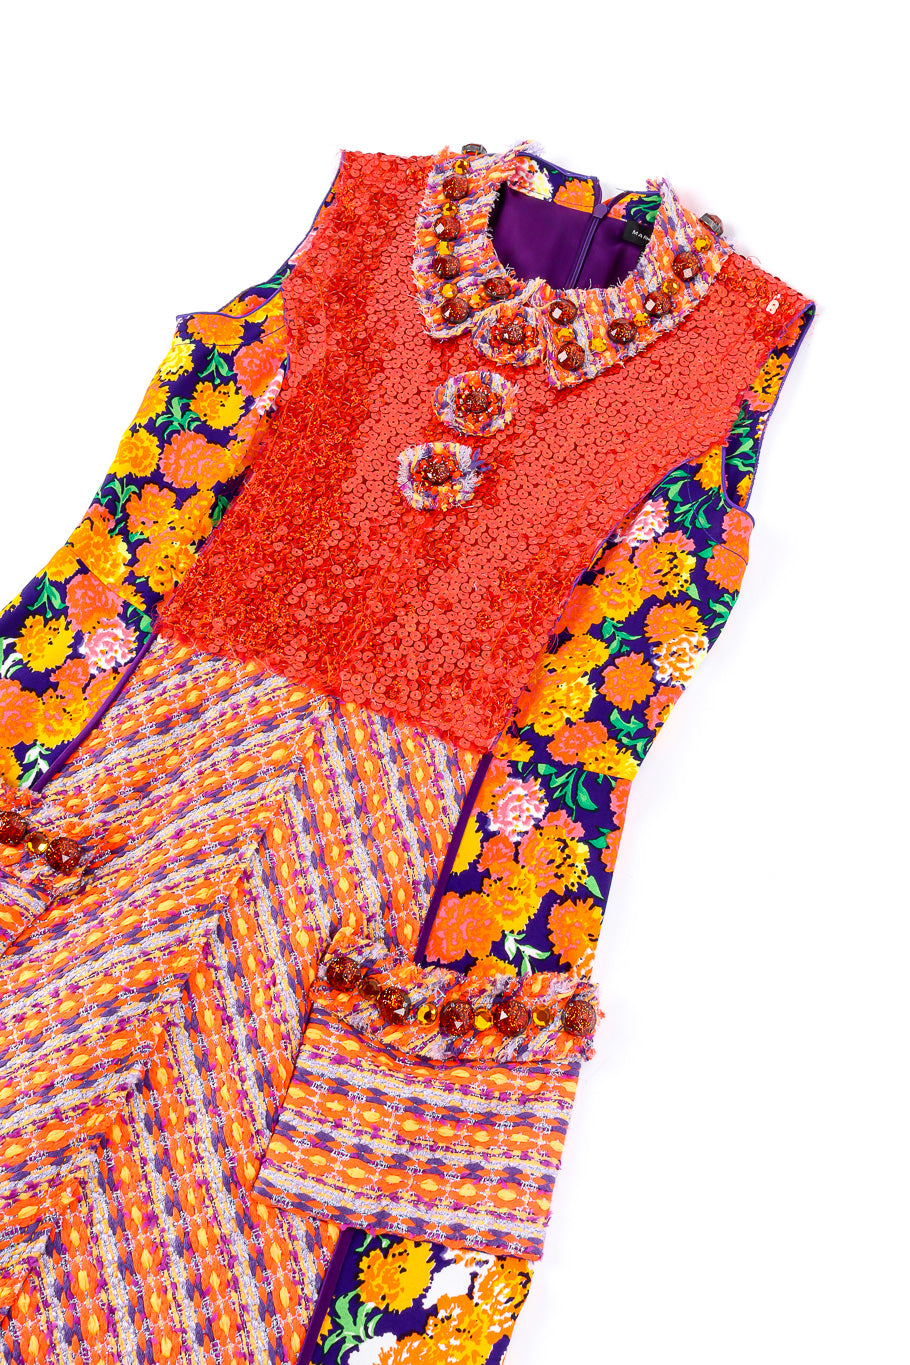 Floral lamé knit sequin dress by Marc Jacobs flat lay @recessla